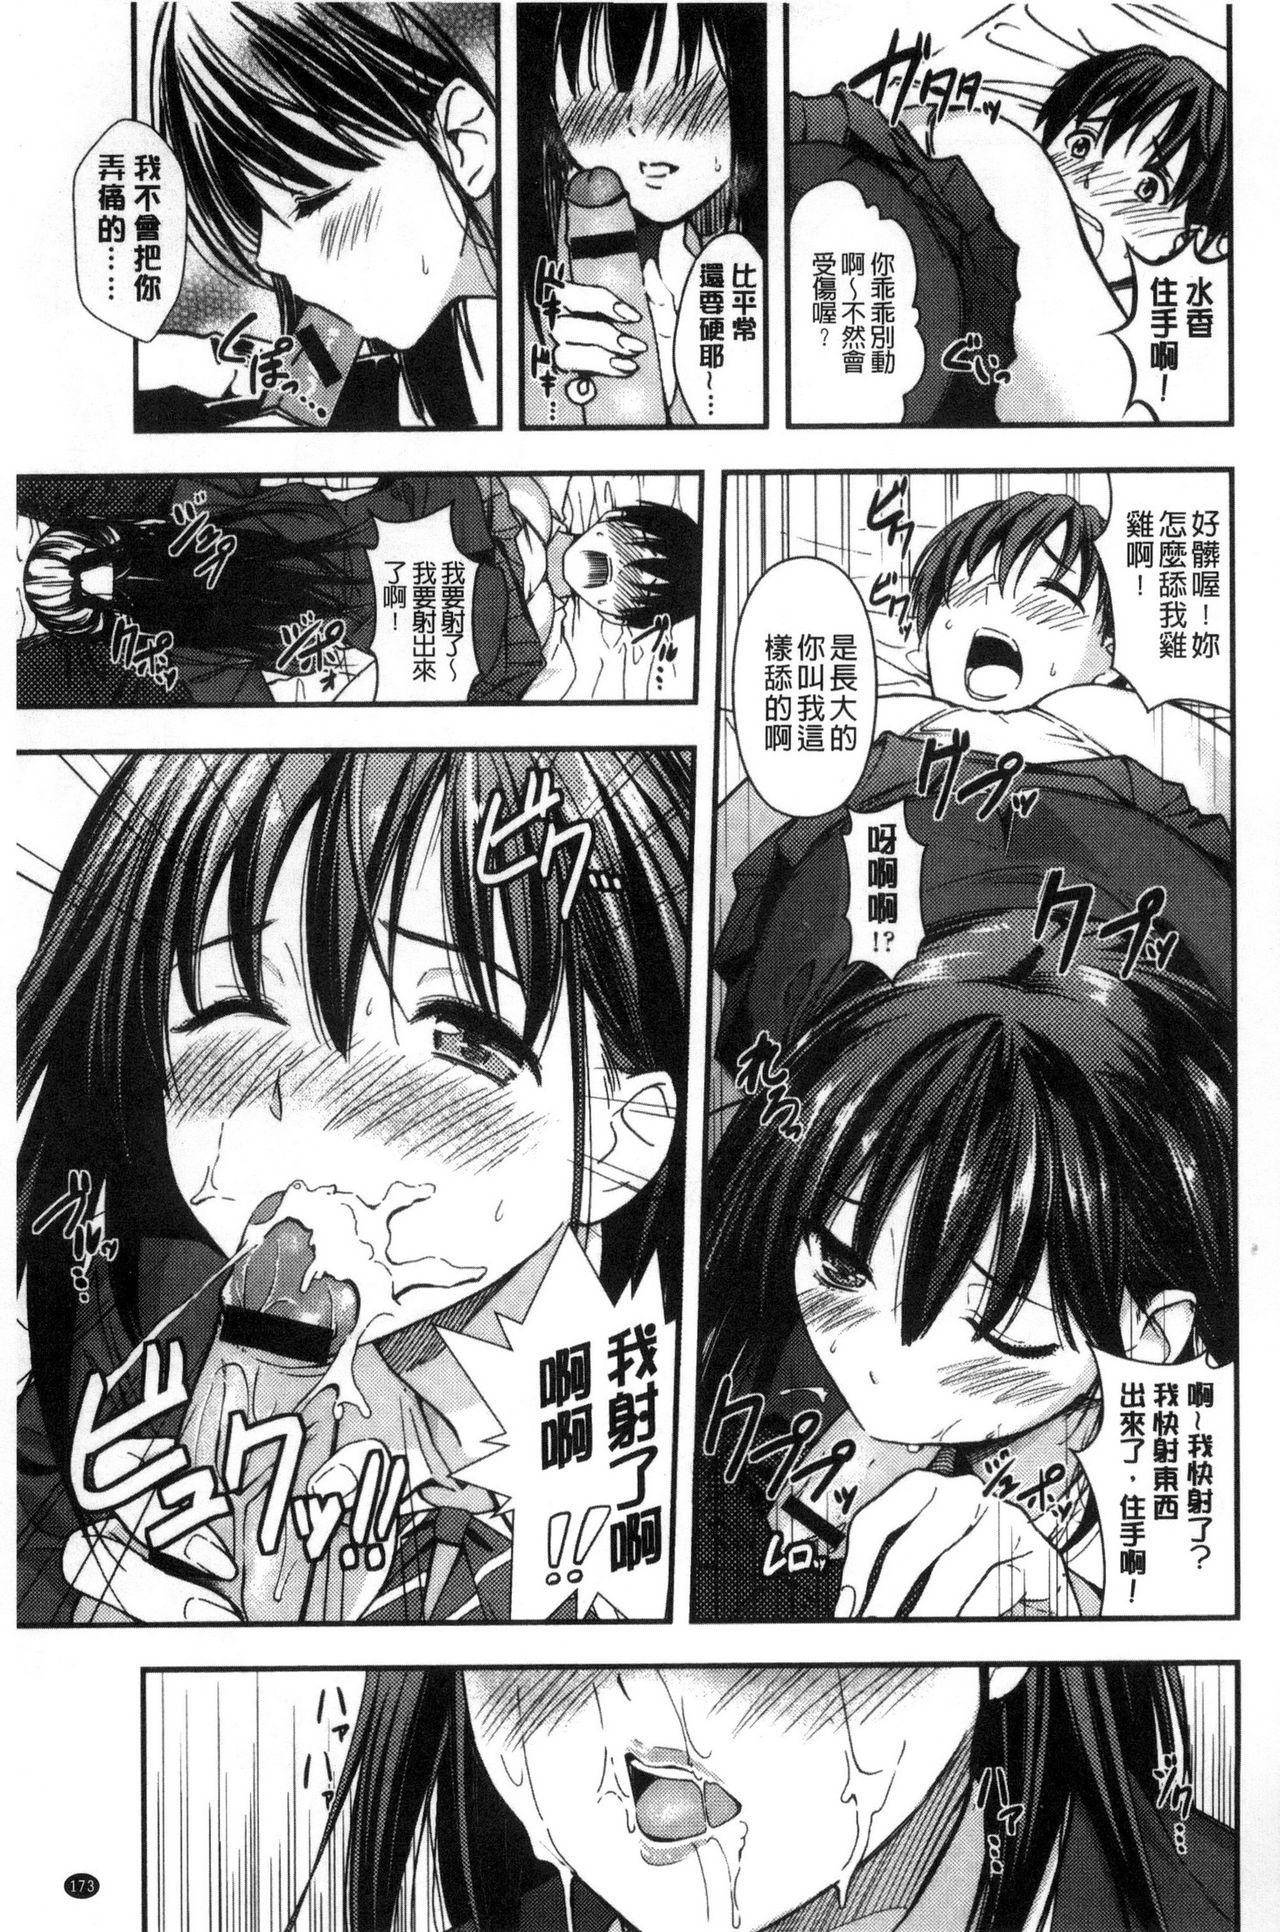 Seifuku no Mama Aishinasai! - Love in school uniform 174